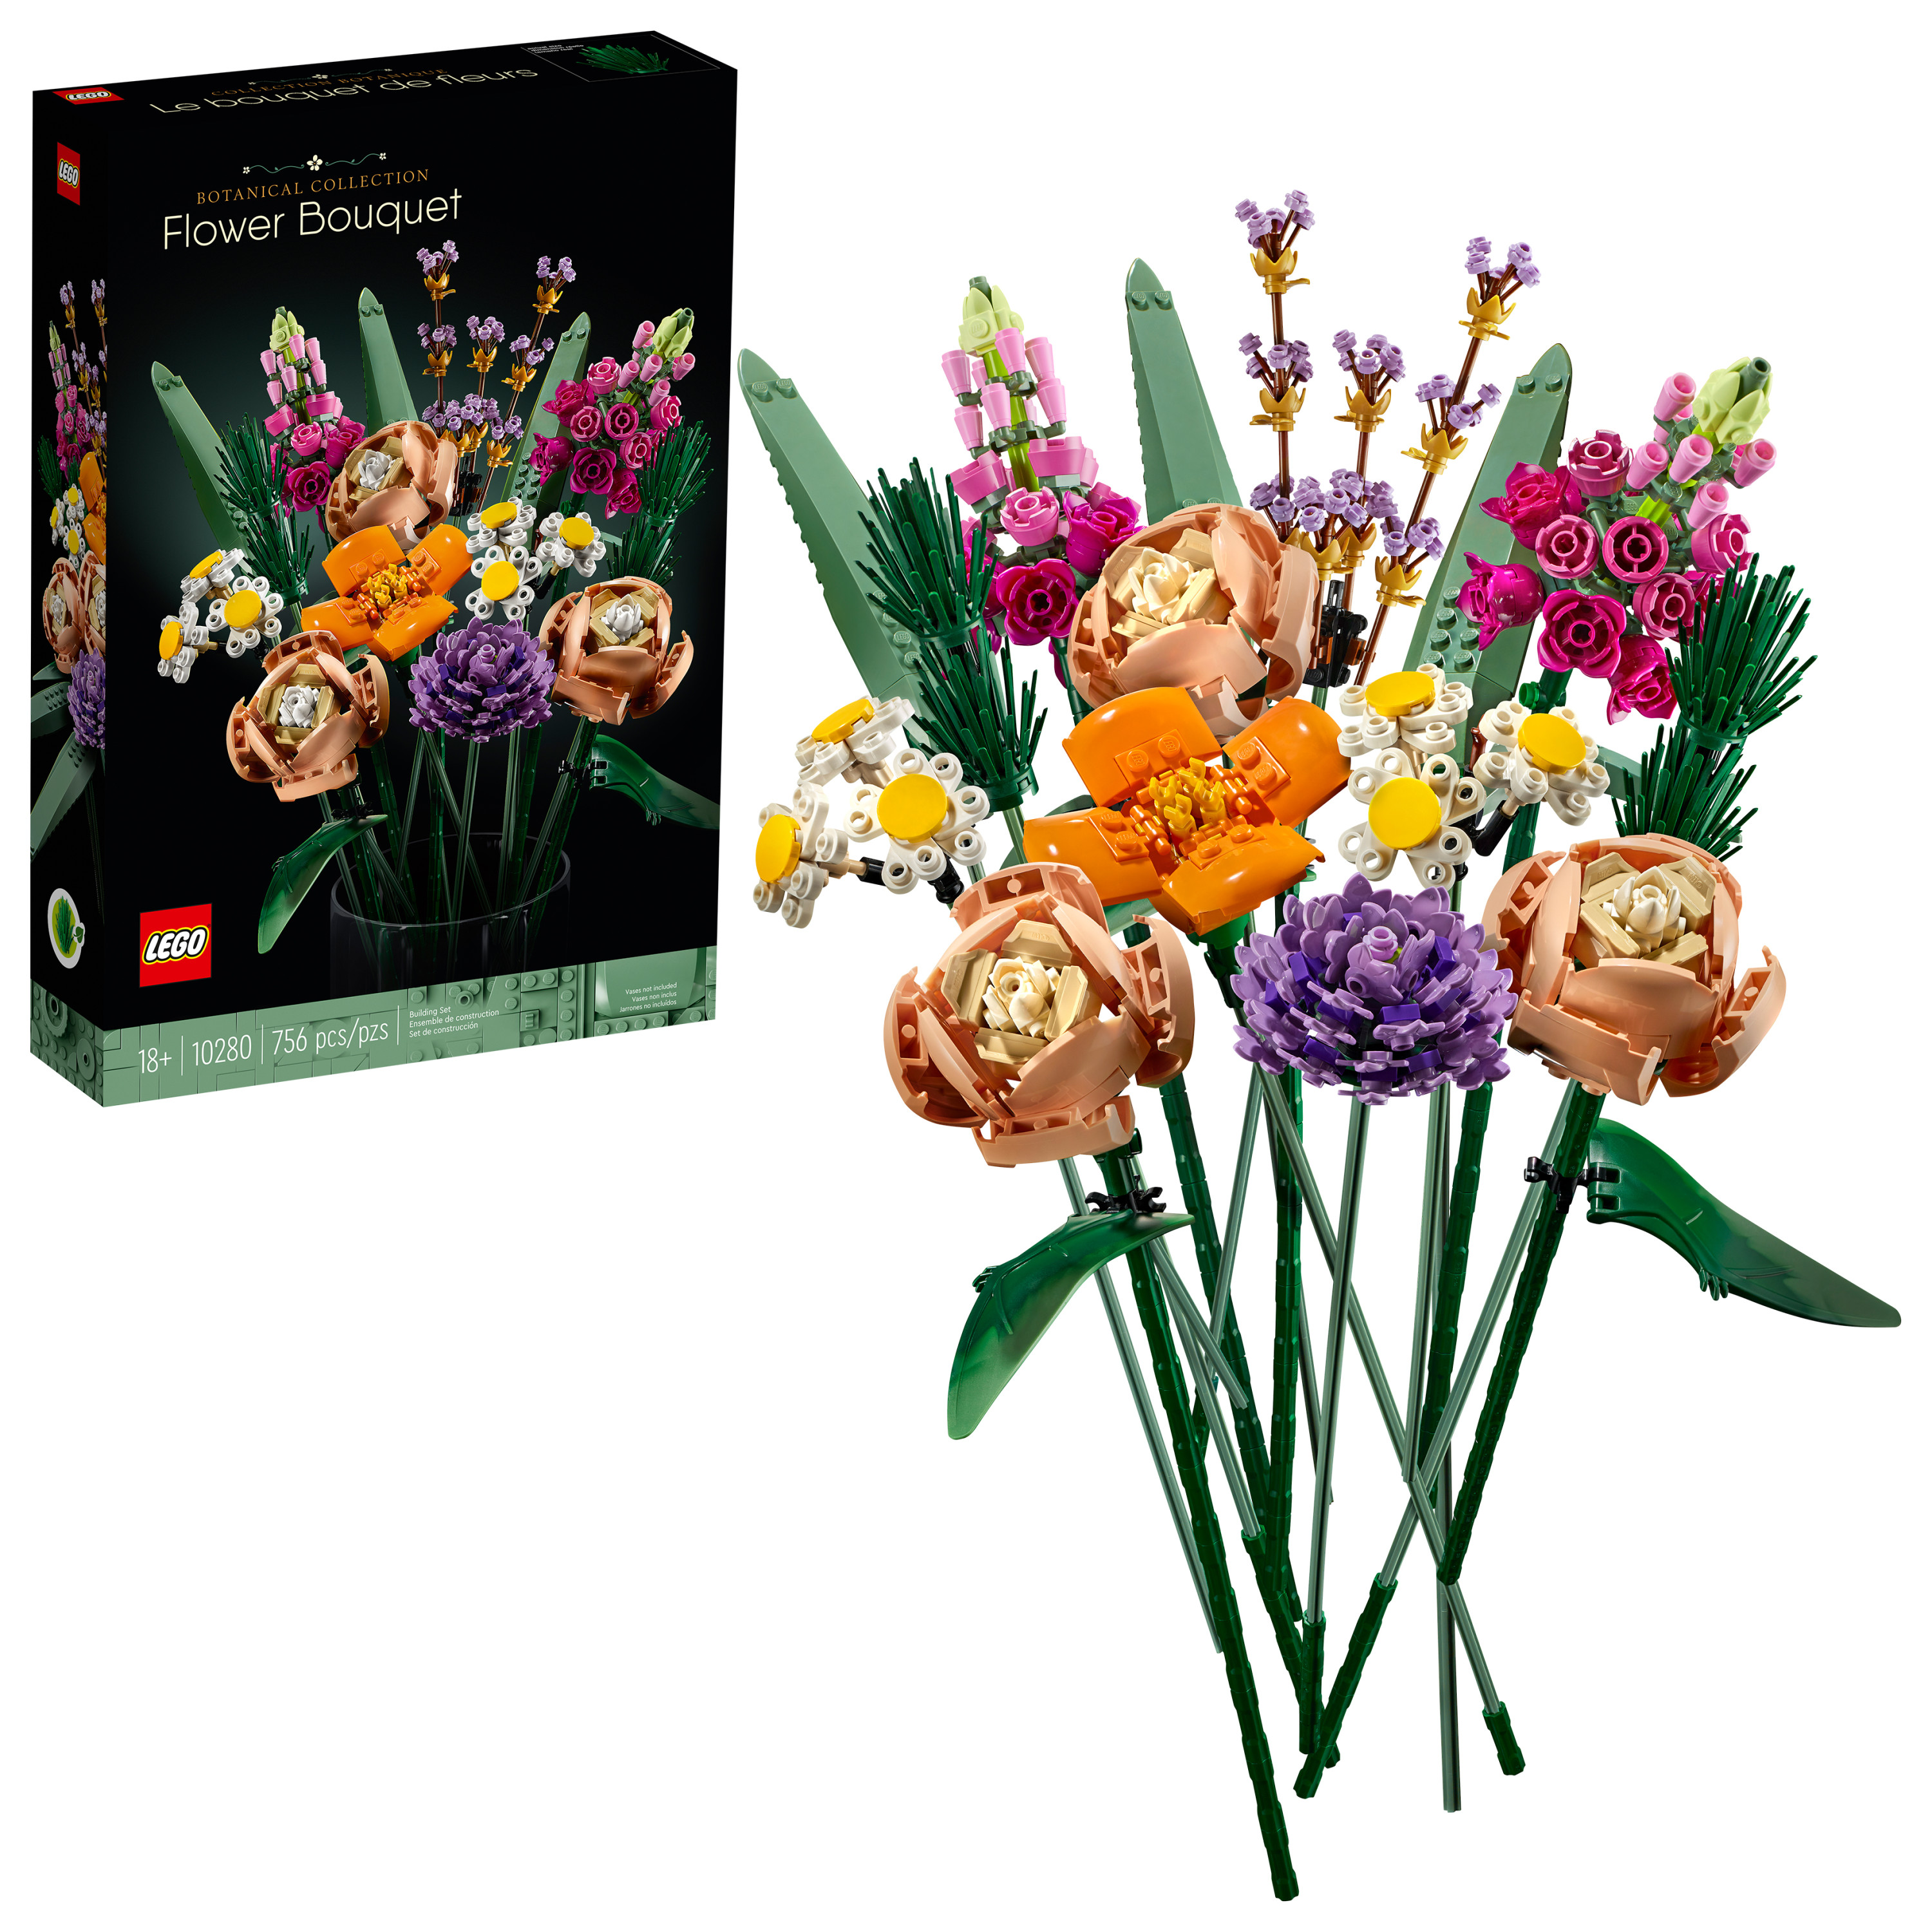 LEGO Flower Bouquet 10280; A Unique Flower Bouquet and Creative Project for Adults (756 Pieces) - Walmart.com $40.49